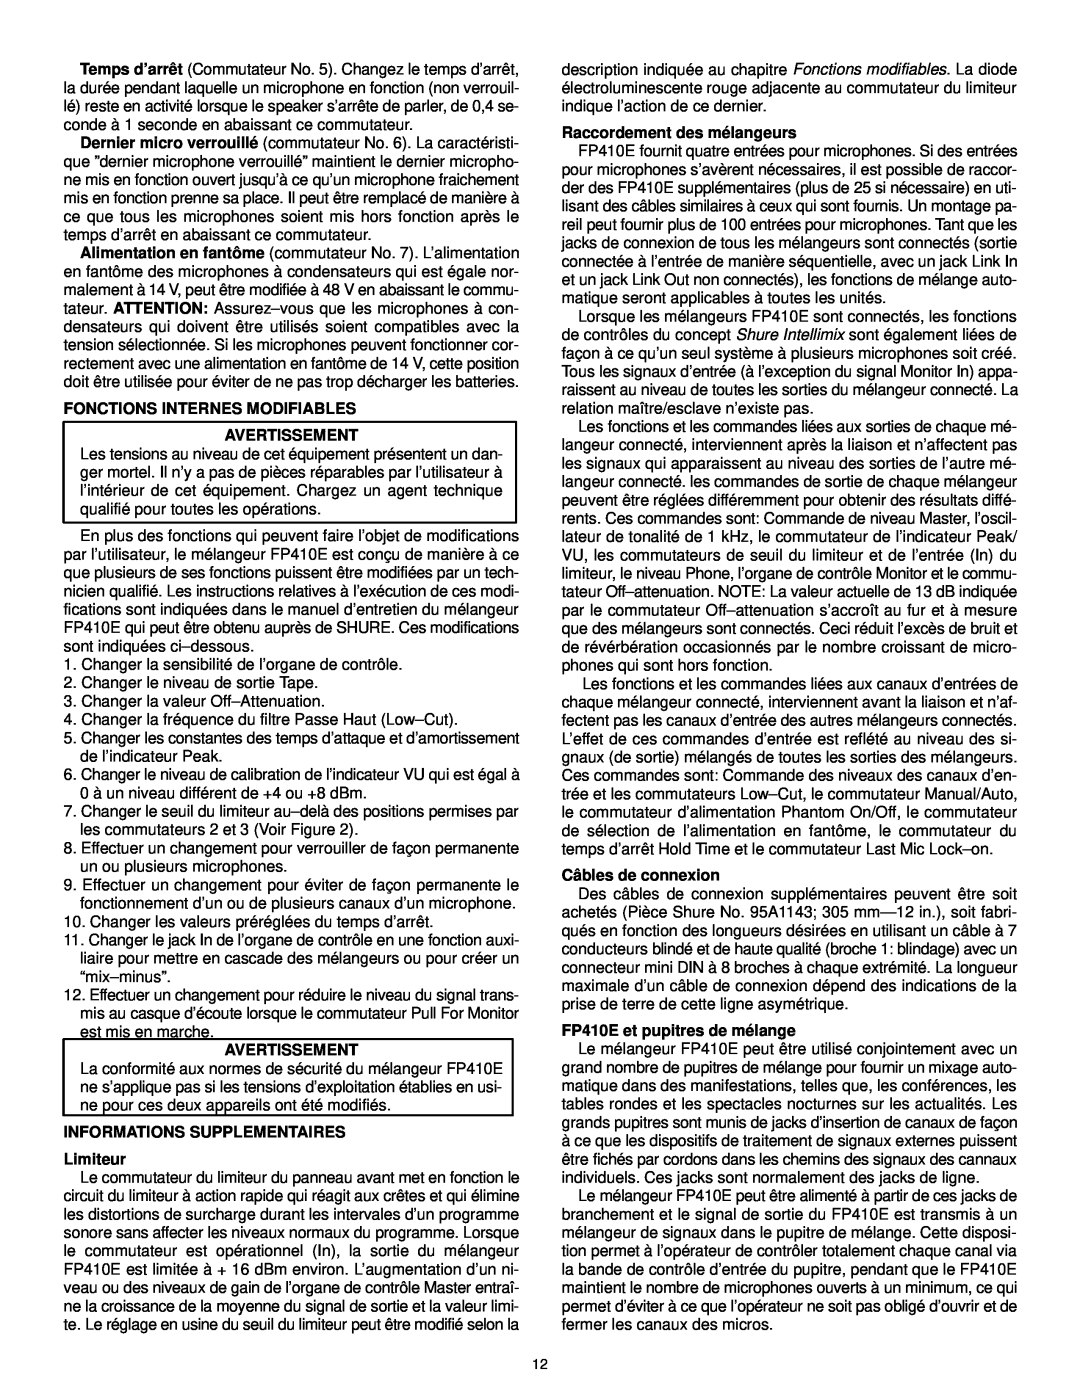 Shure FP410 manual Fonctions Internes Modifiables Avertissement, INFORMATIONS SUPPLEMENTAIRES Limiteur, Câbles de connexion 